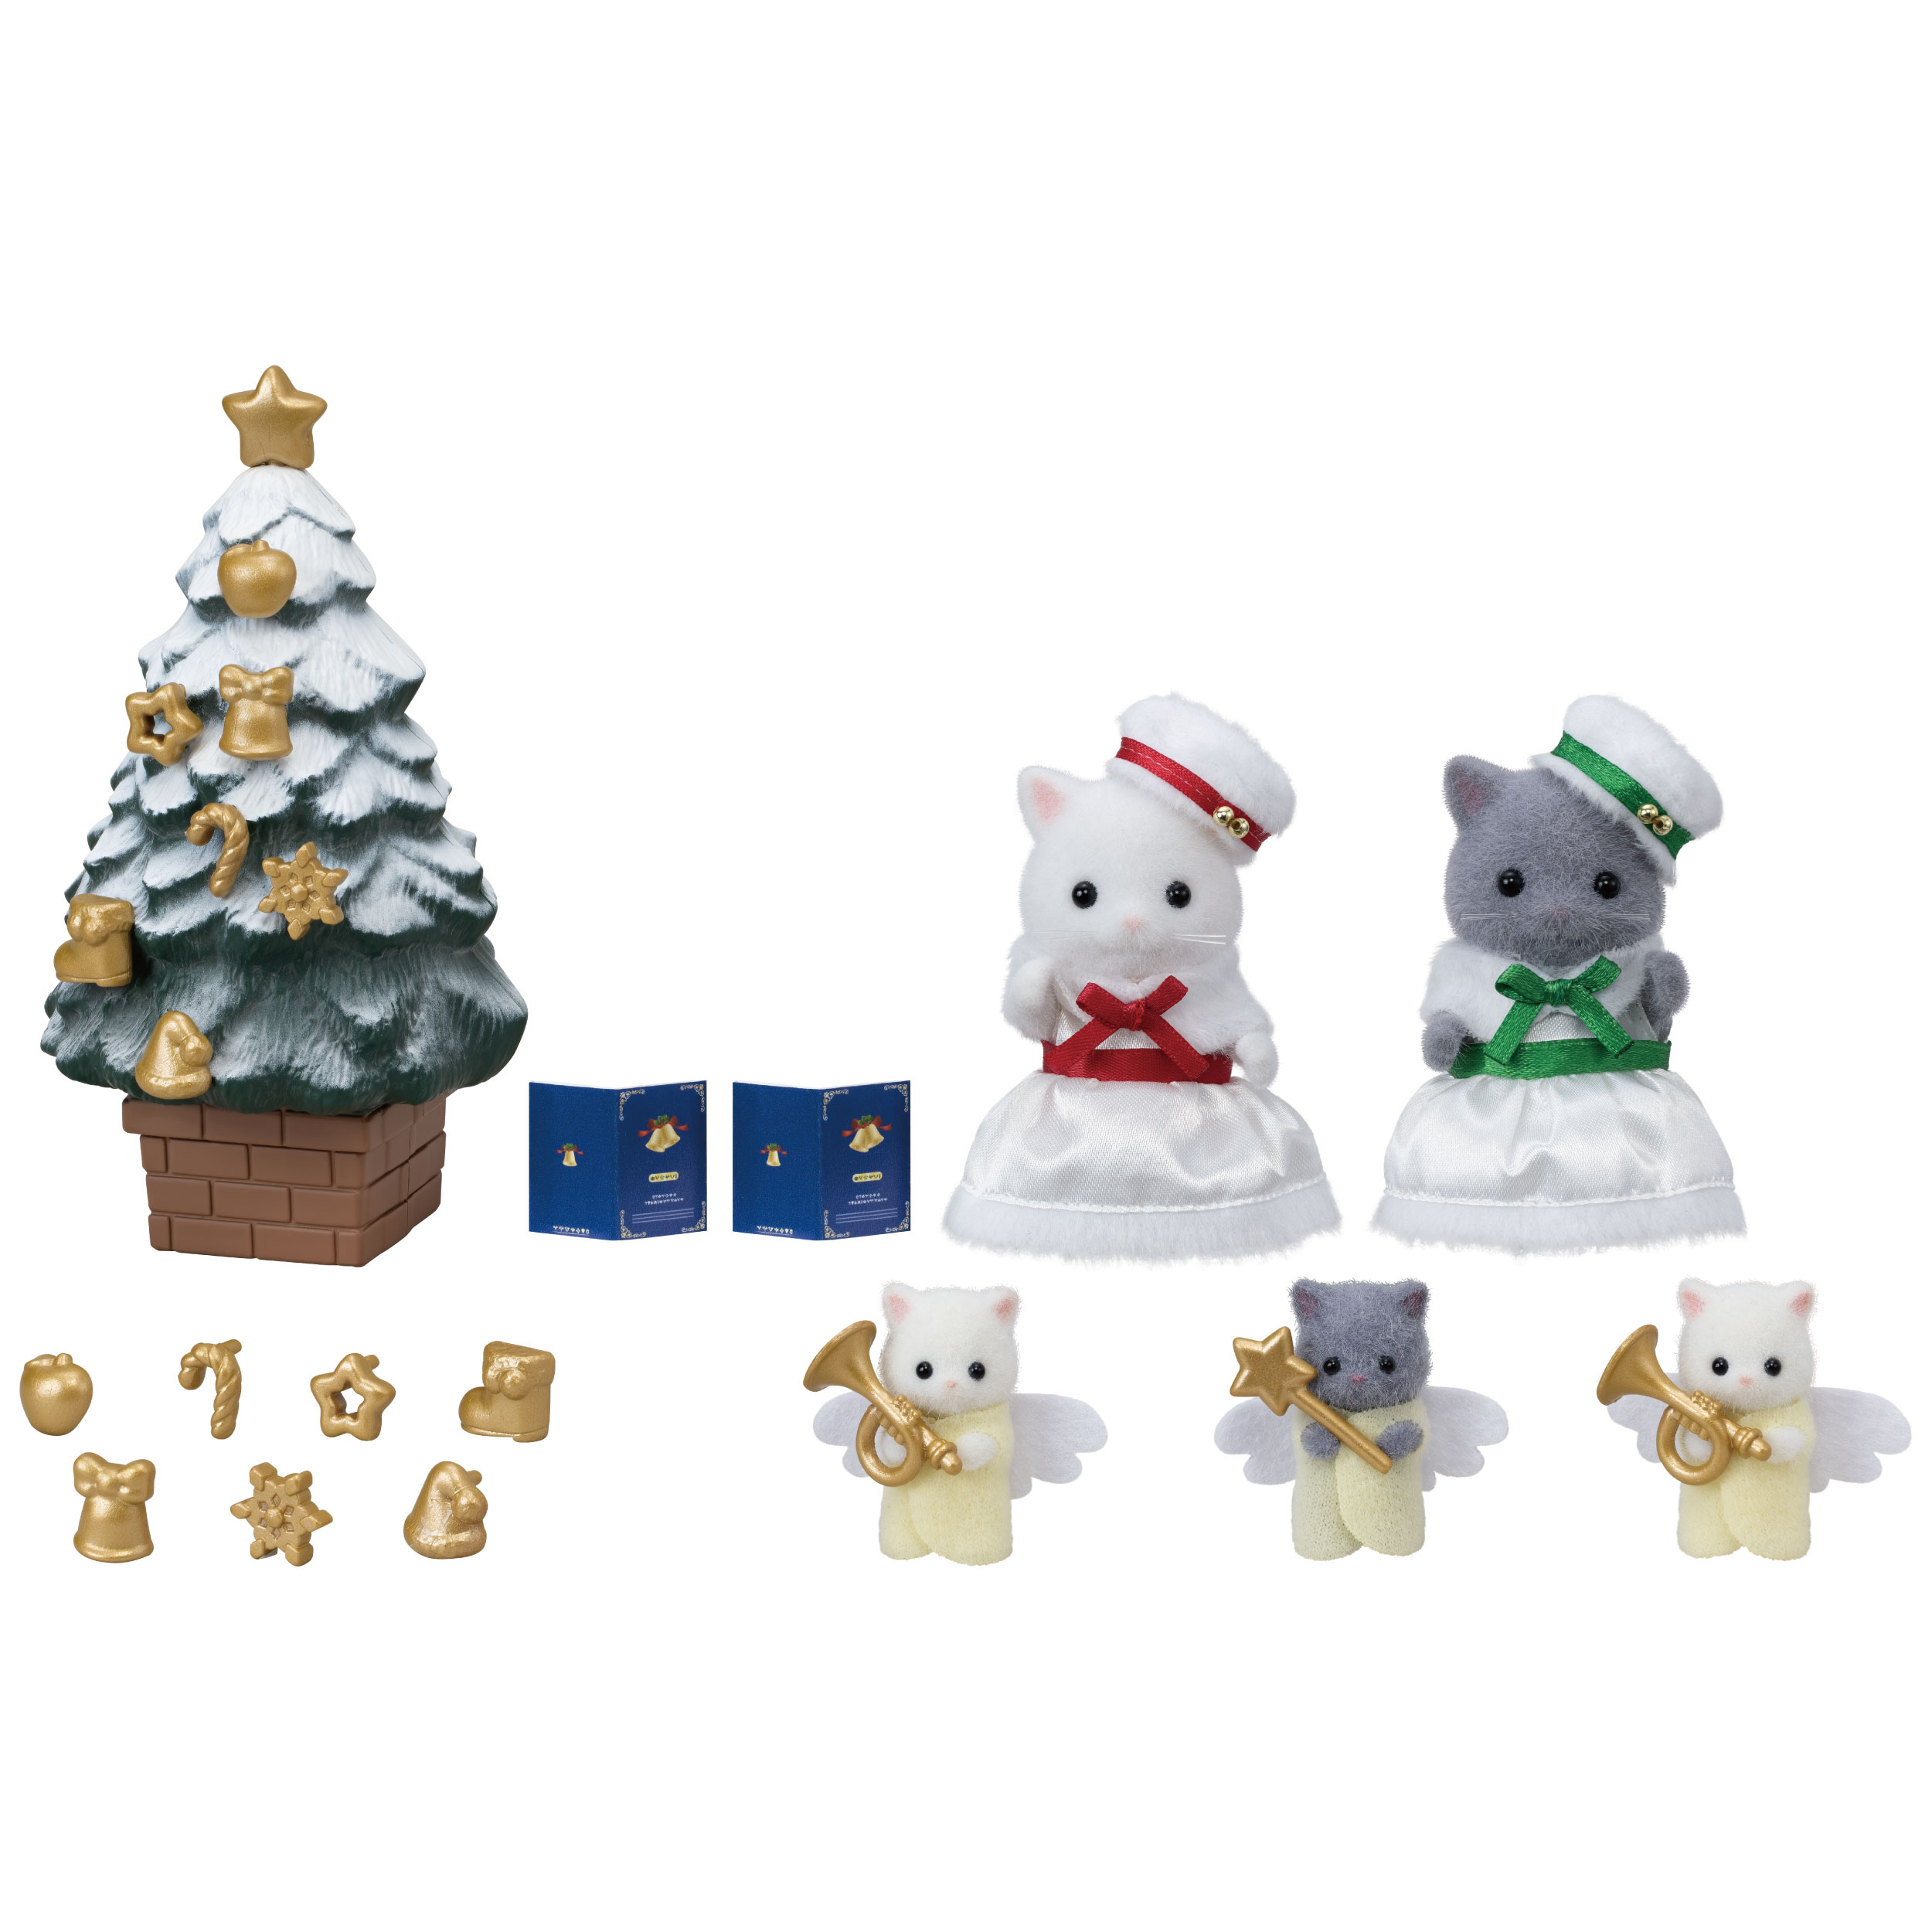 ホワイトクリスマスセット / 家具と人形セット - シルバニア 